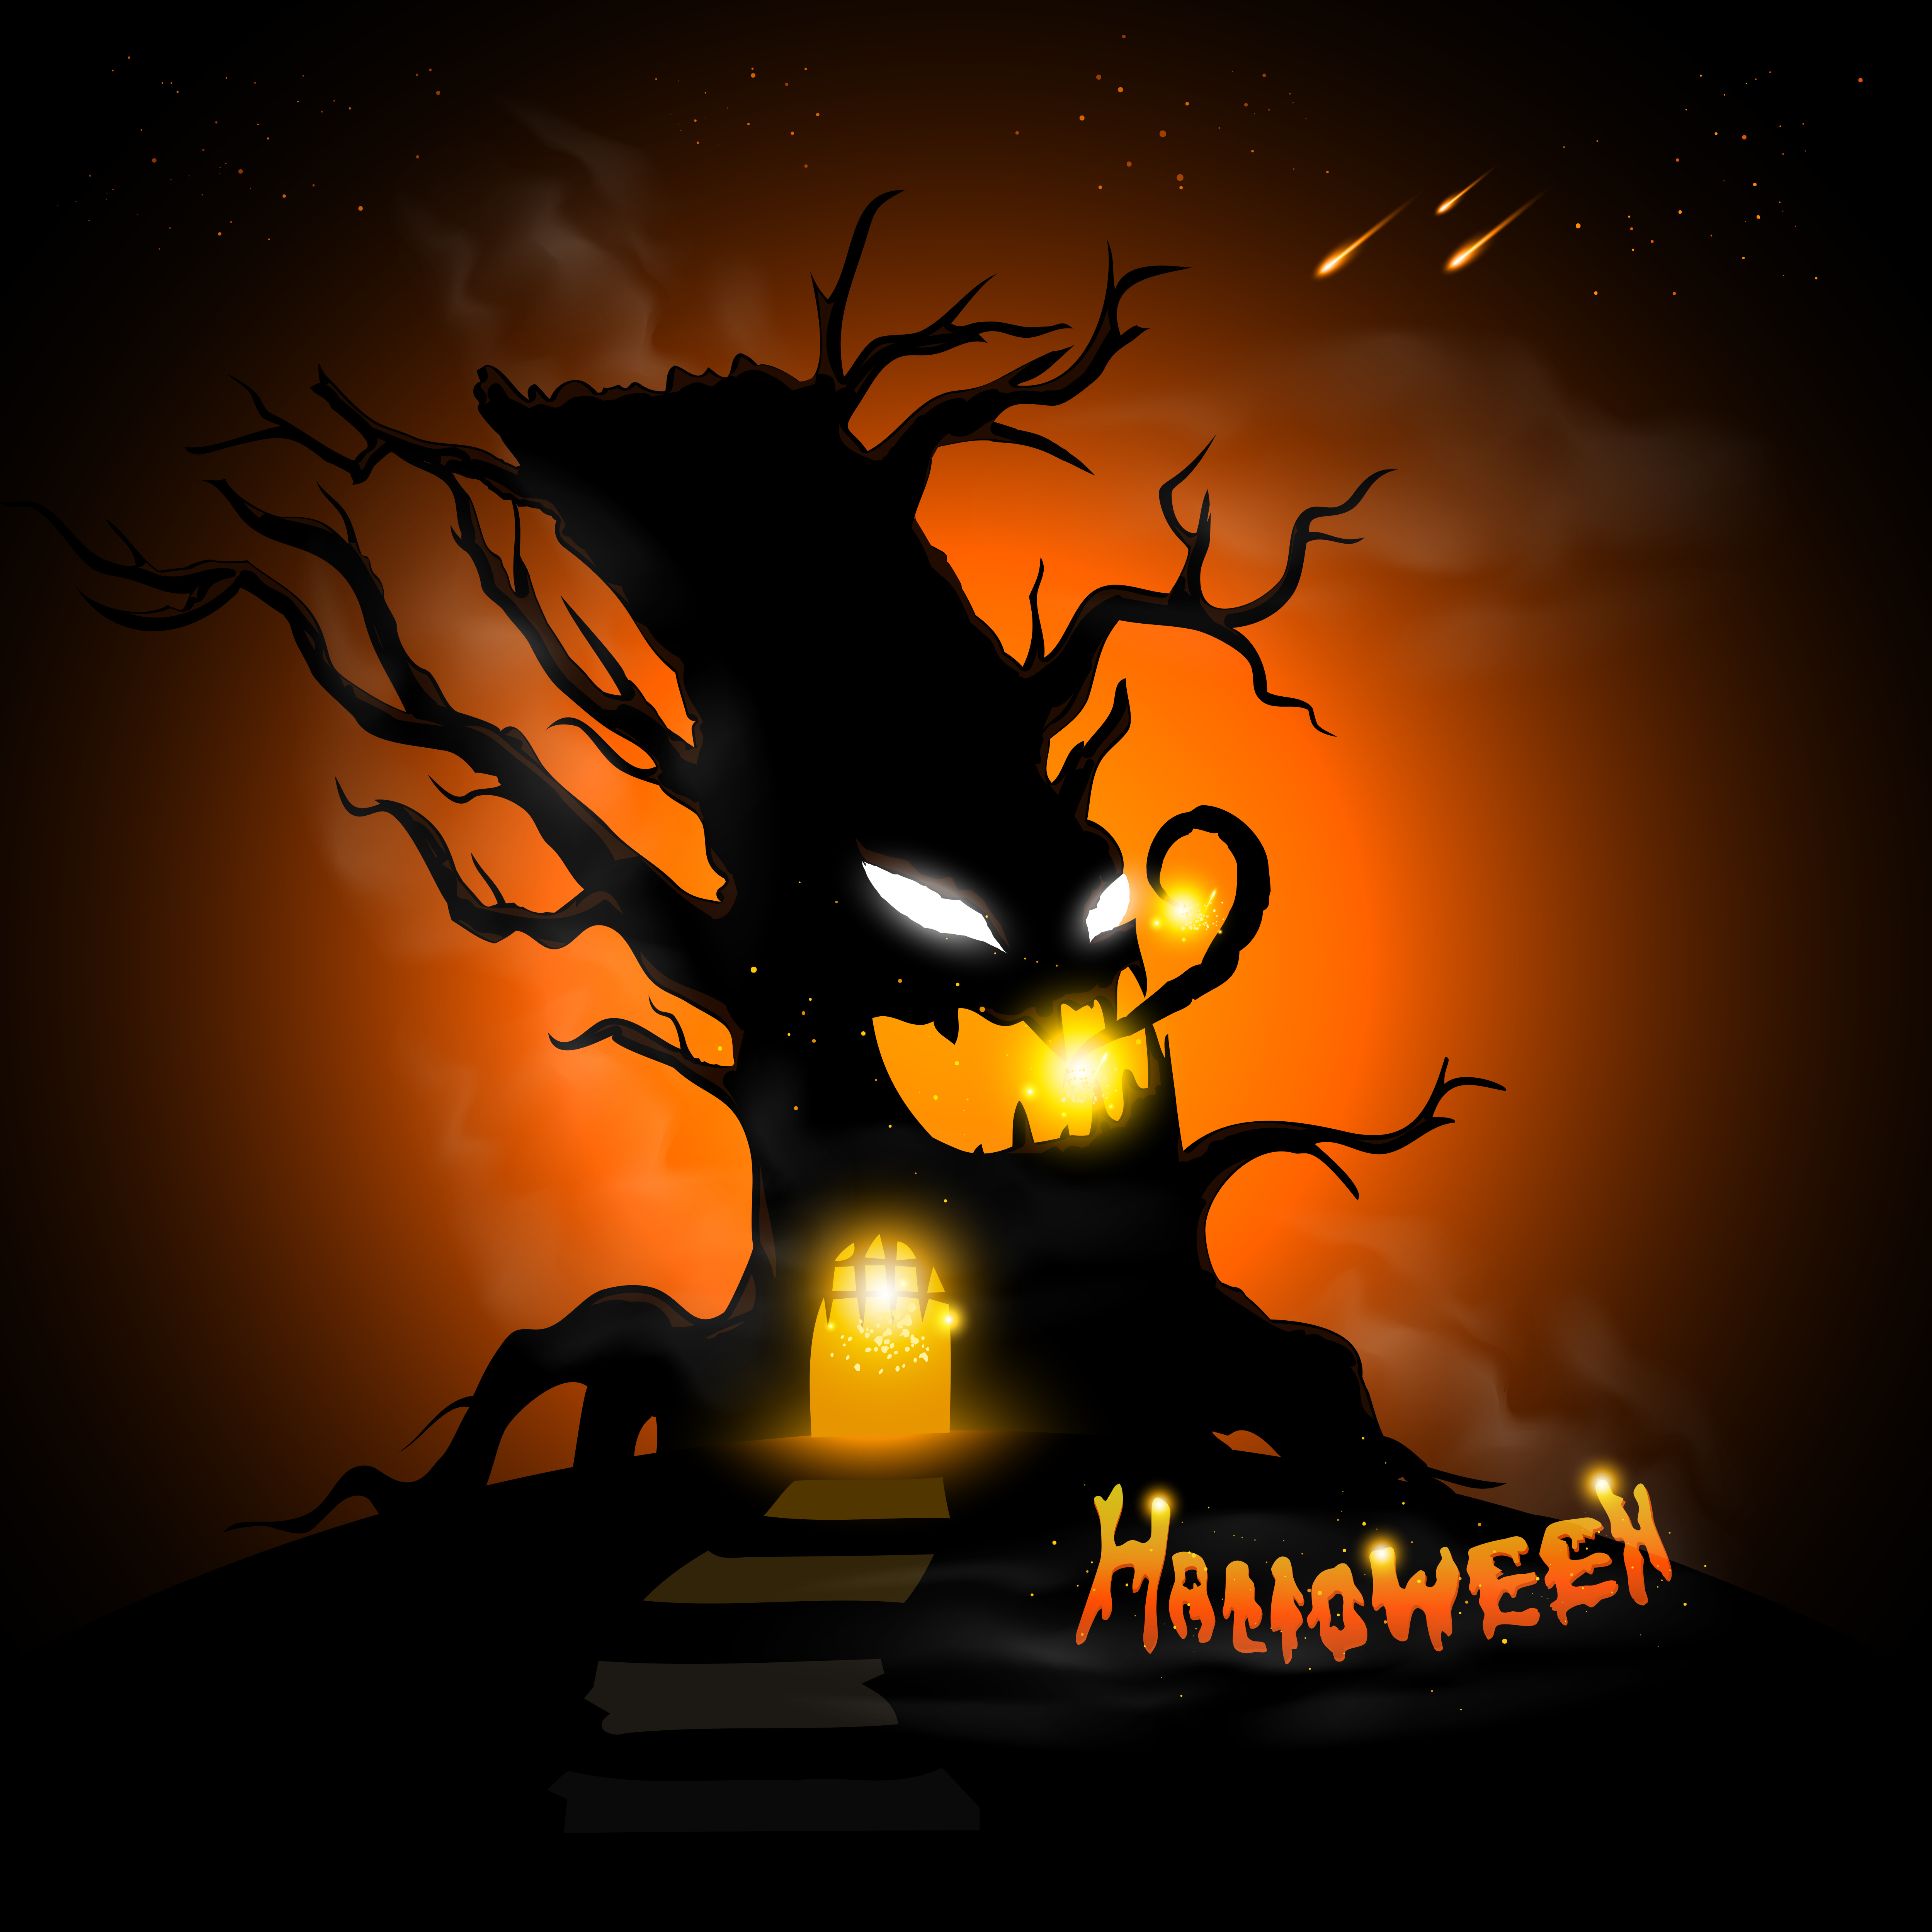 Download Halloween evil tree - Download Free Vectors, Clipart ...